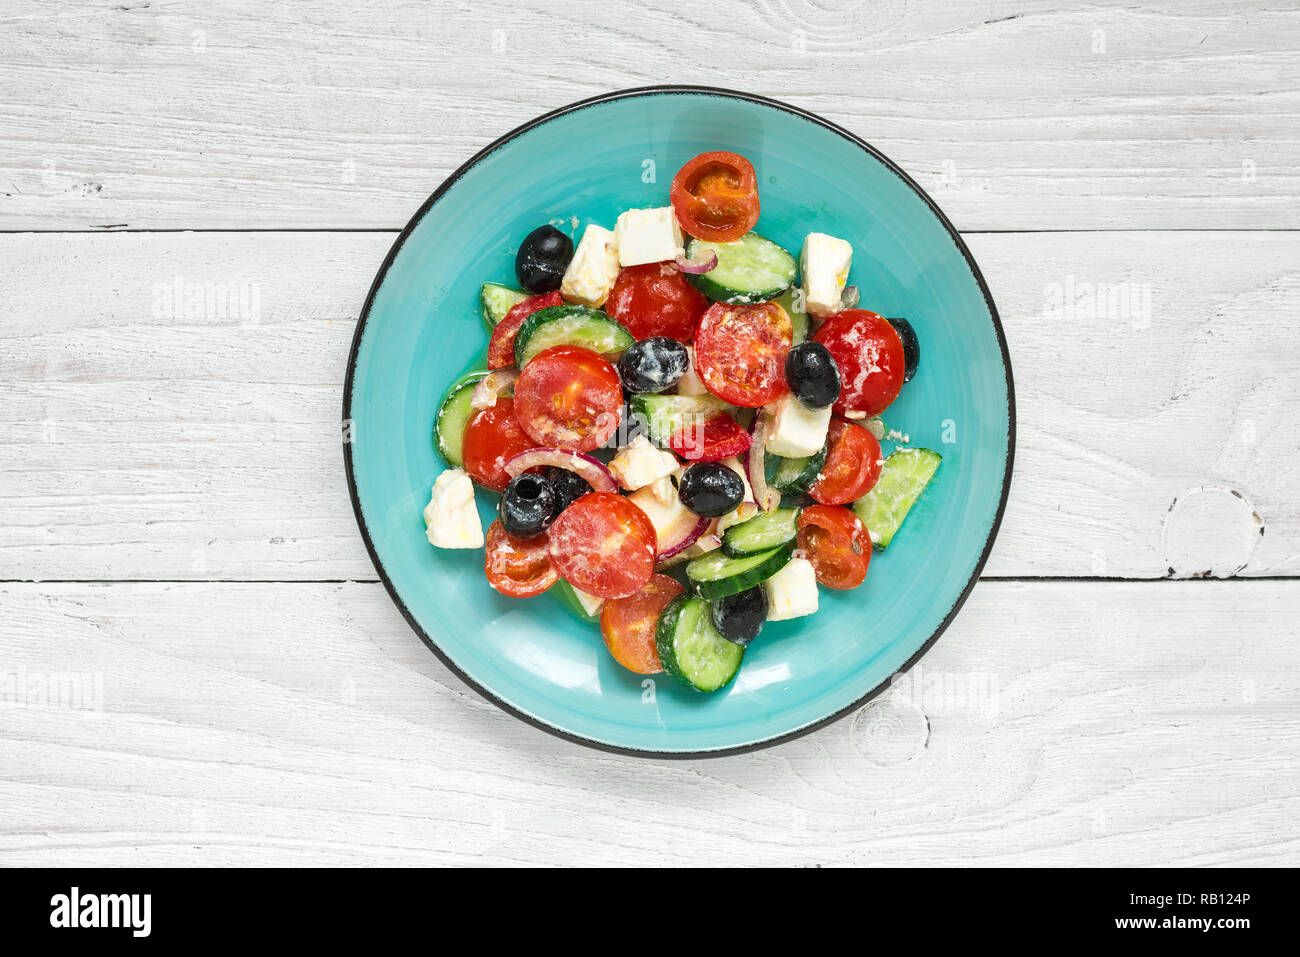 Salade grecque avec des légumes frais, fromage feta et olives noires dans une assiette sur la table en bois blanc Vue de dessus. Banque D'Images